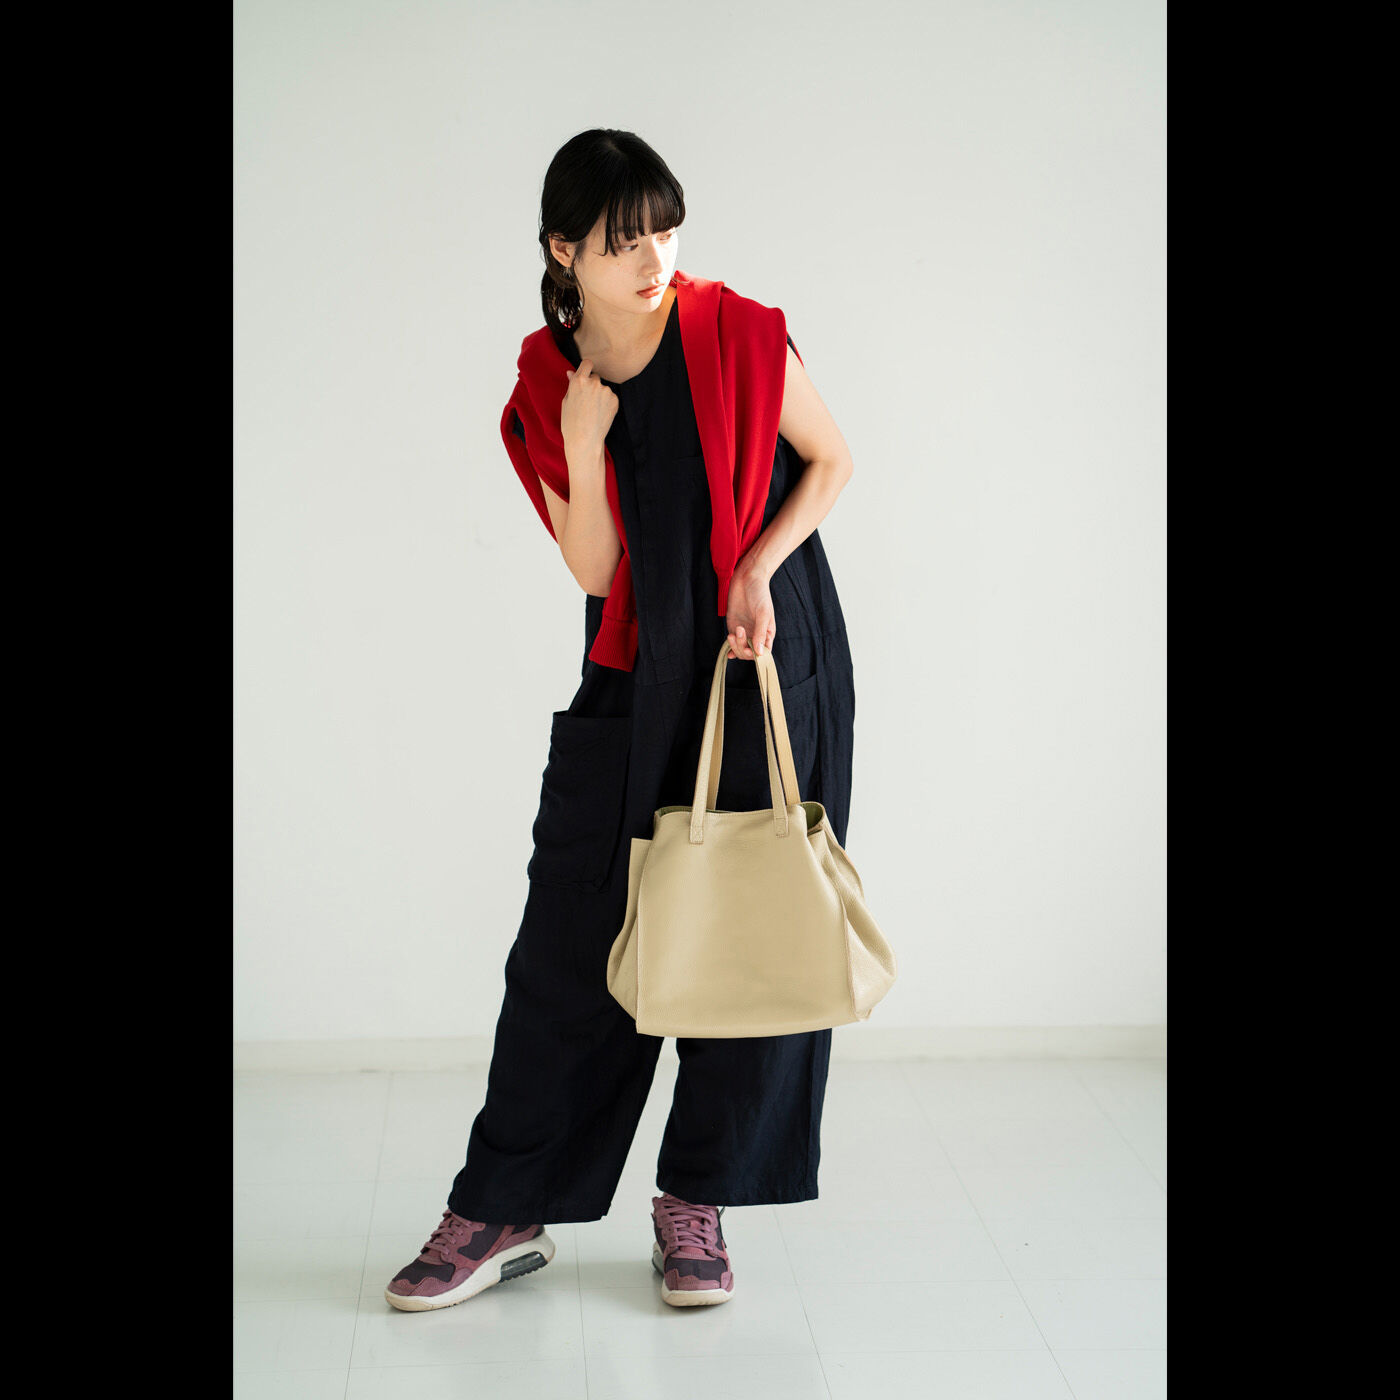 ＆Stories|福岡の鞄作家が作った 職人本革のナーヴェトート〈エクリュベージュ〉|こだわったのは、大きくても女性が持ちやすいバランス。